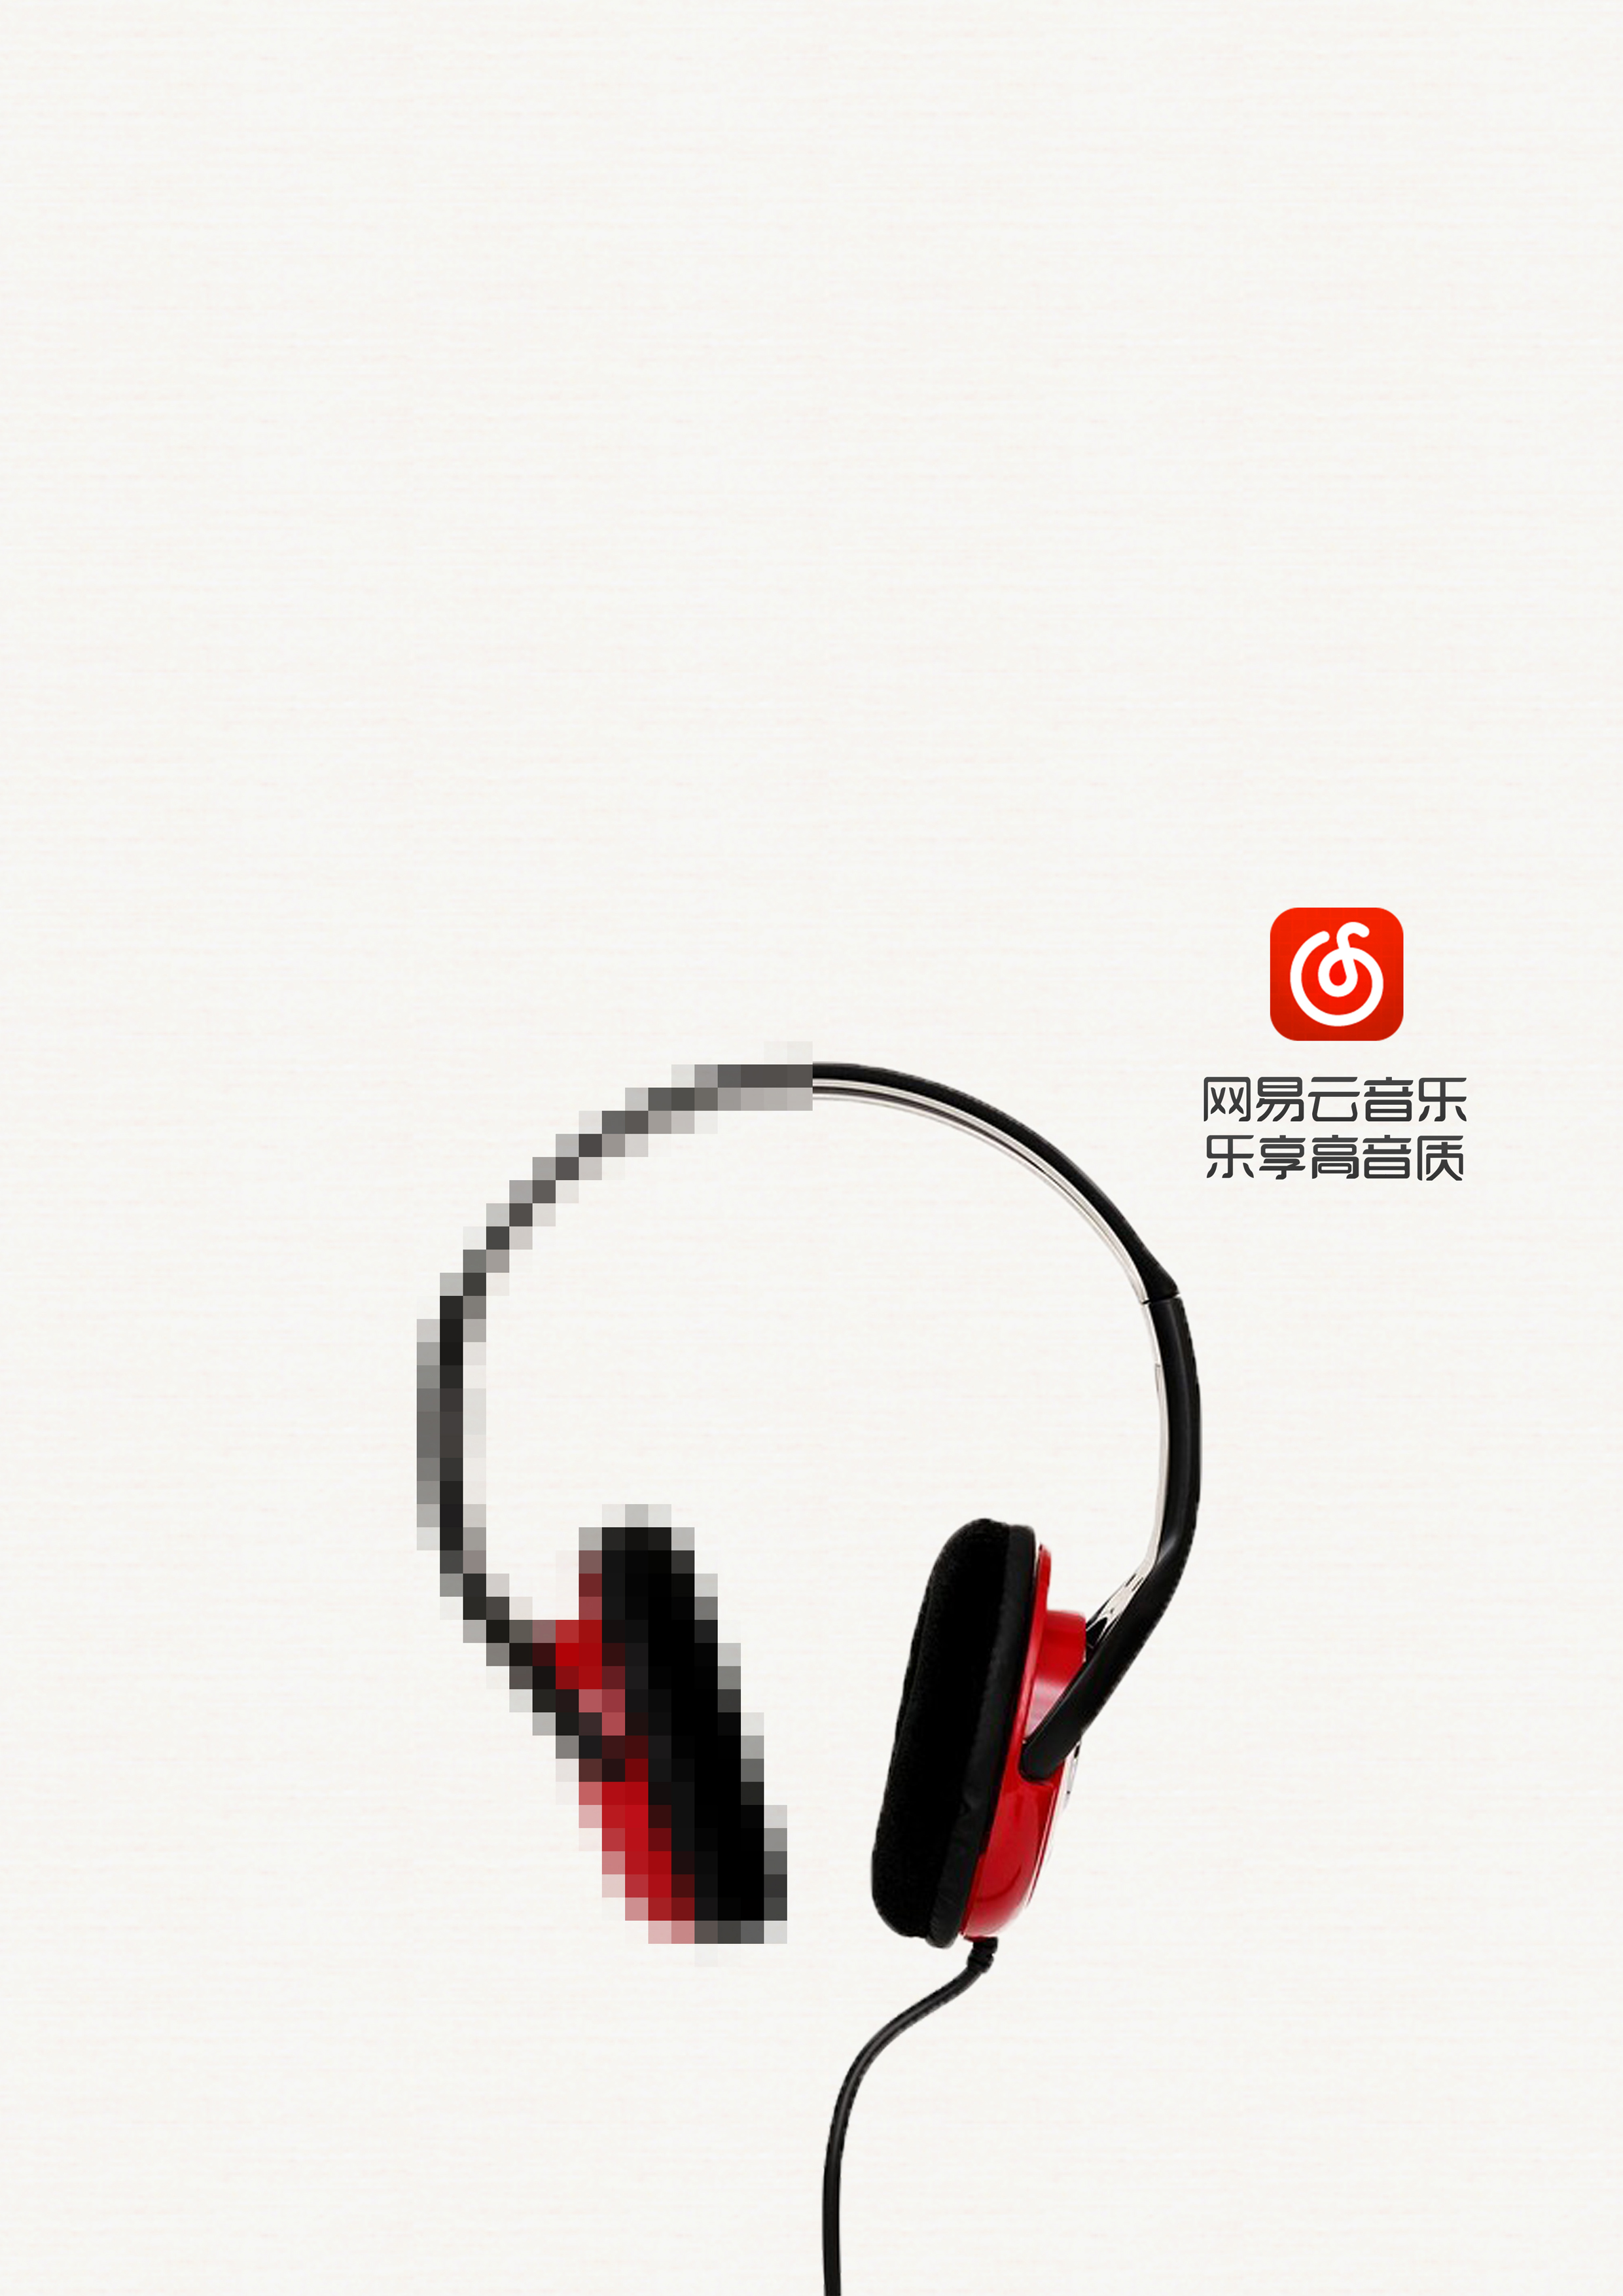 网易云音乐,乐享高音质(大广赛海报)|平面|海报